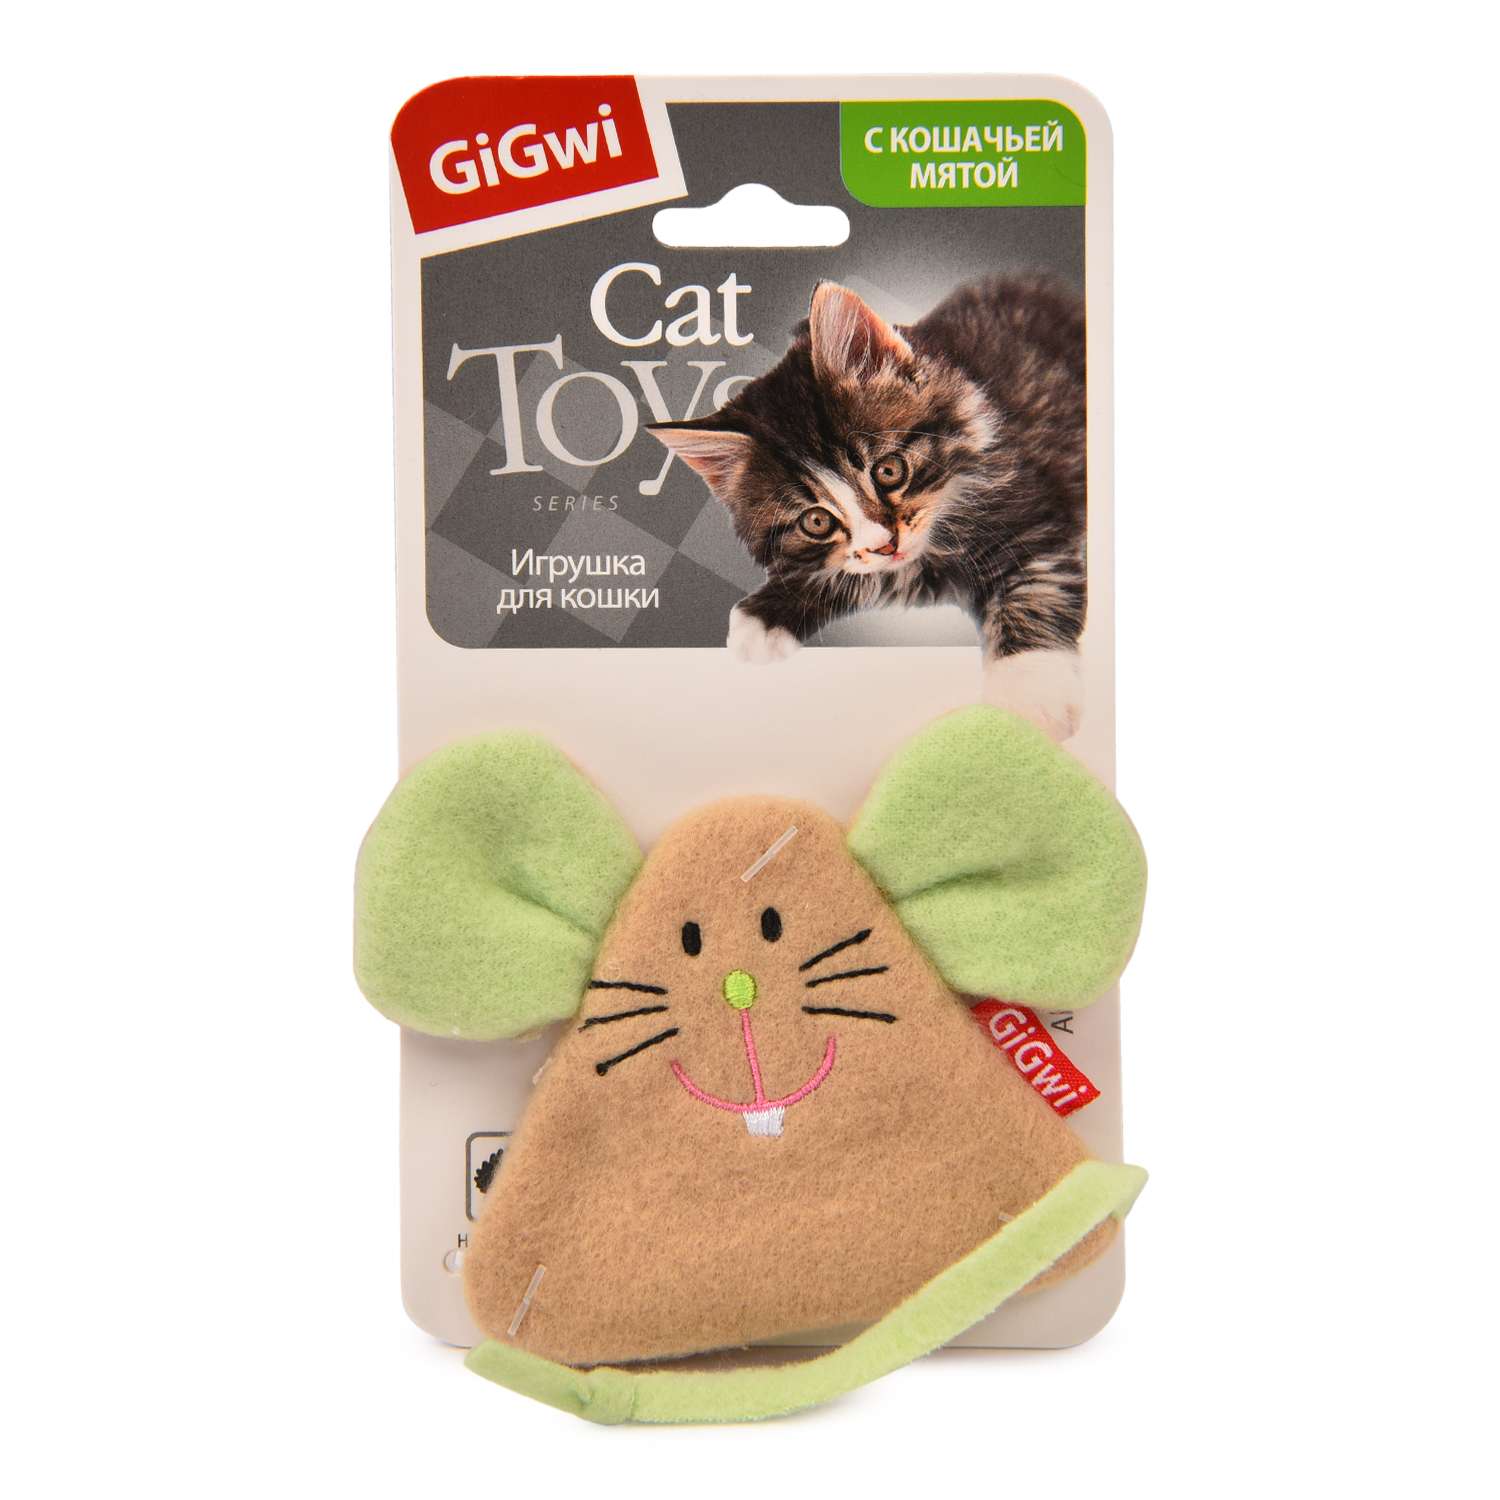 Игрушка для кошек GiGwi Мышка с кошачьей мятой 50116 - фото 2